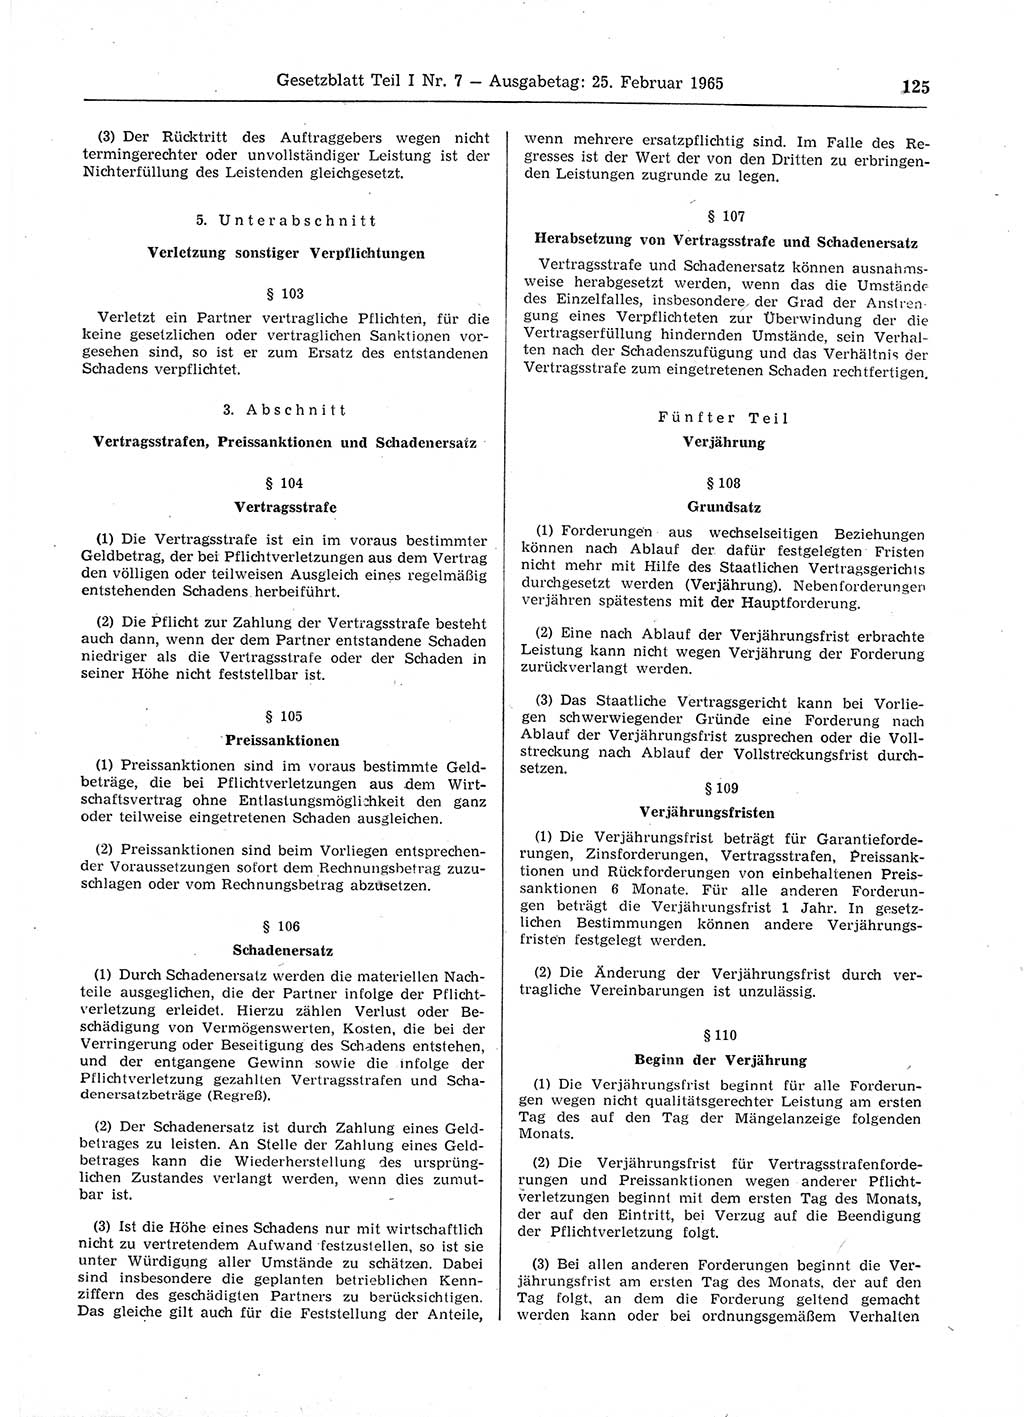 Gesetzblatt (GBl.) der Deutschen Demokratischen Republik (DDR) Teil Ⅰ 1965, Seite 125 (GBl. DDR Ⅰ 1965, S. 125)